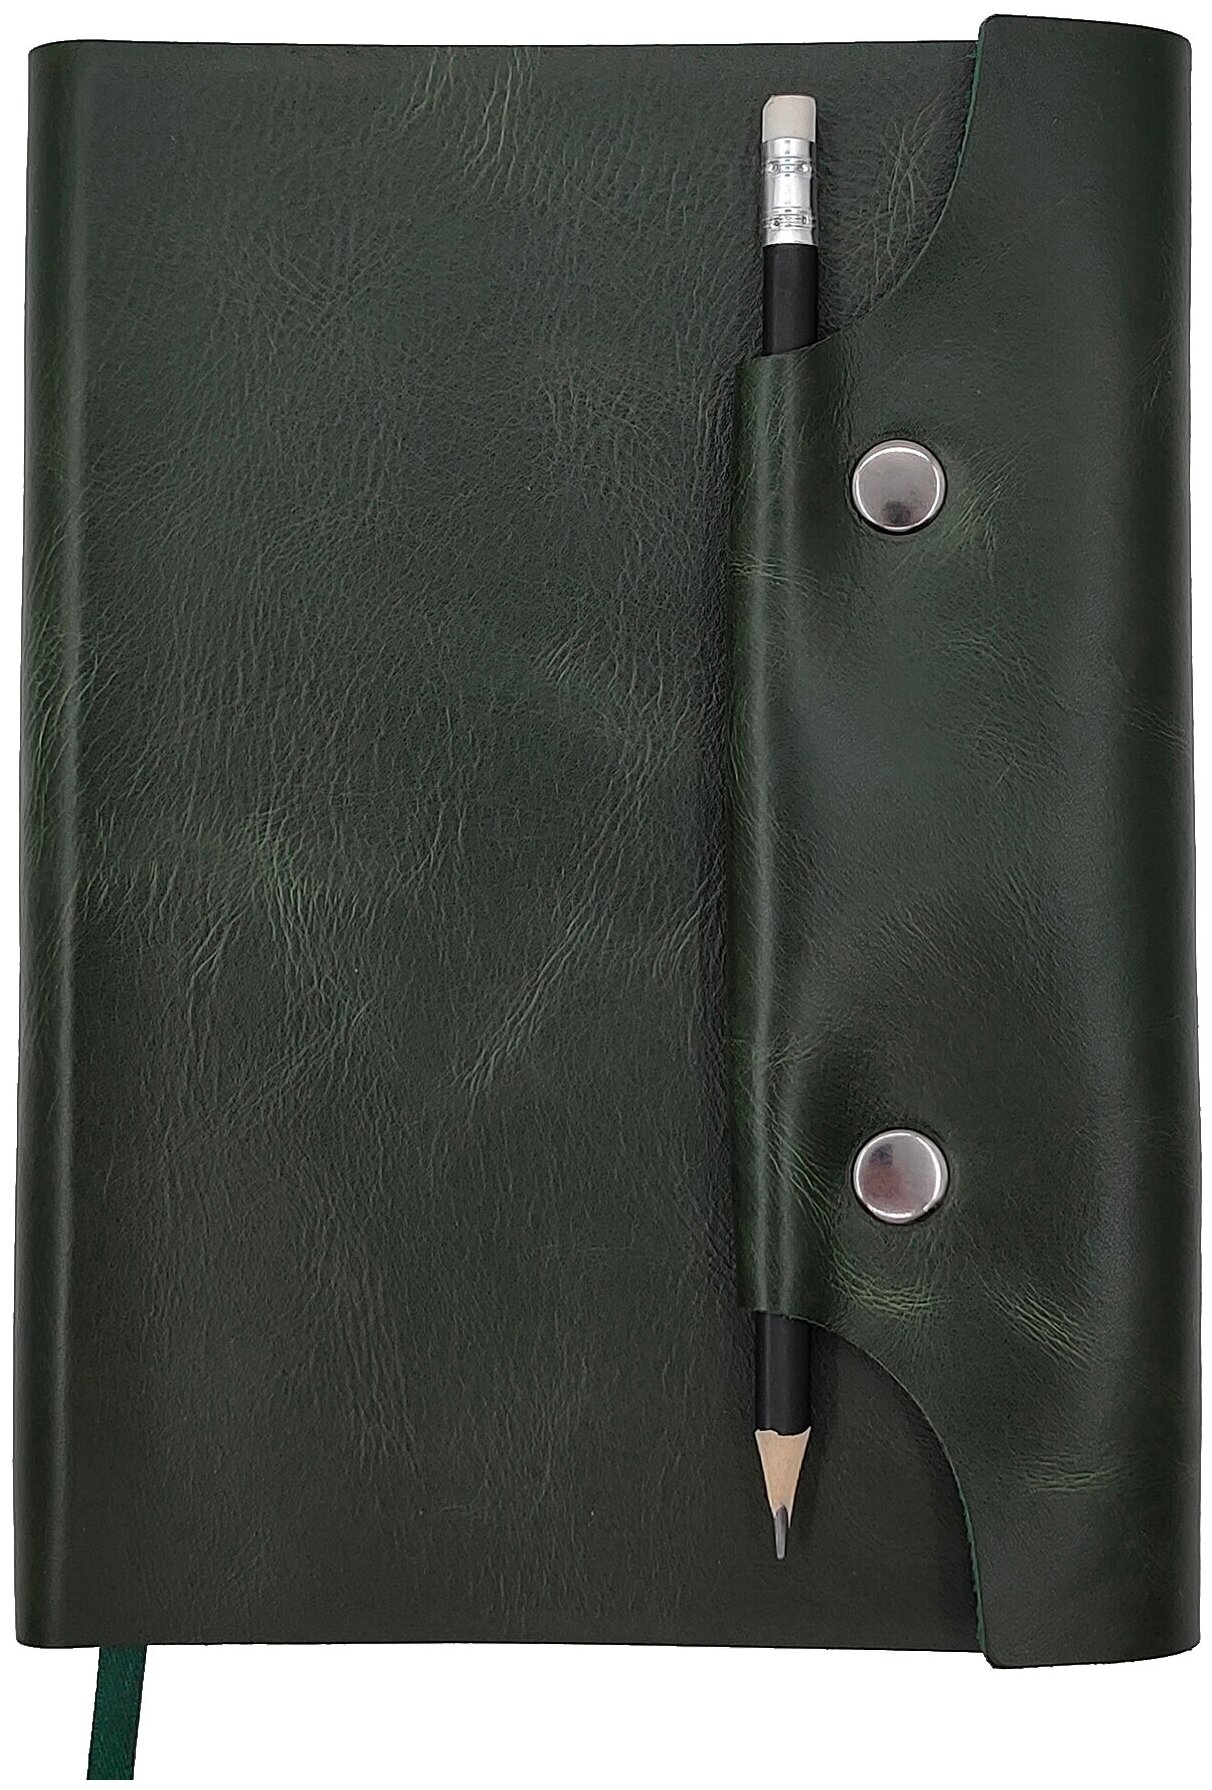 Зеленый кожаный ежедневник Shiva Leater с отделкой Pull-Up, с застежкой на две кнопки и отделением для карандаша